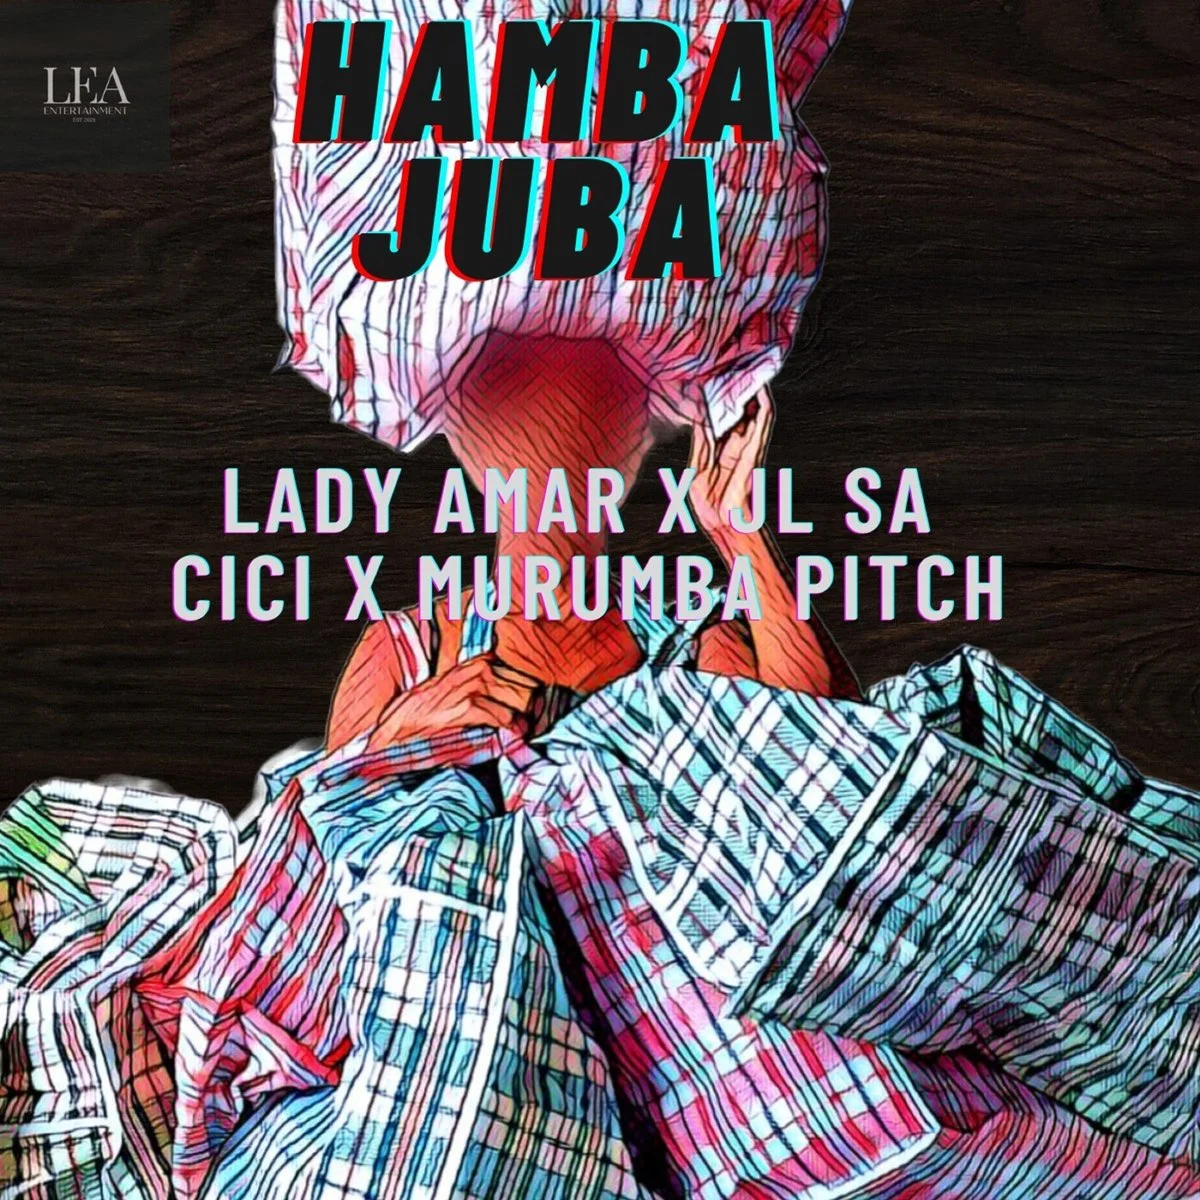 Cici – Hamba Juba Ft. Murumba Pitch, Lady Amar & JL SA